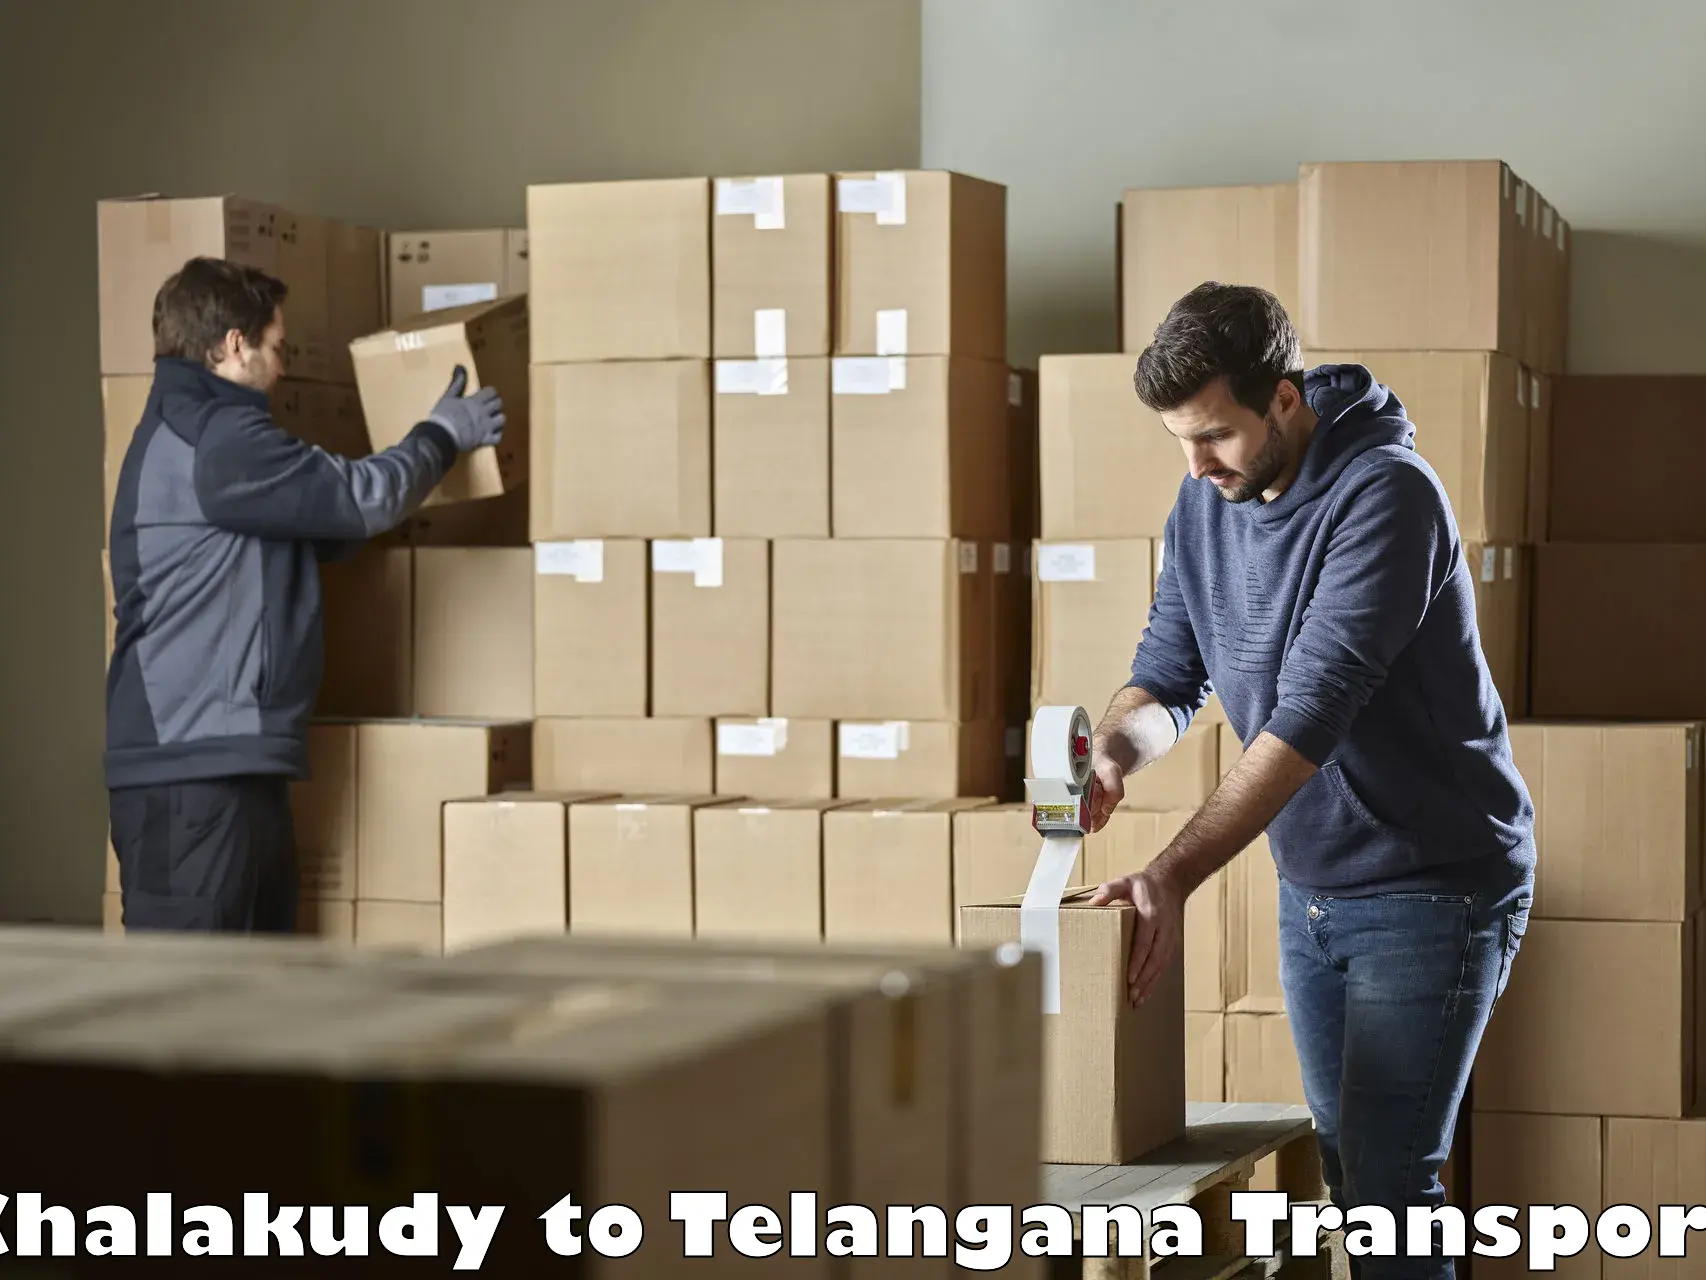 Pick up transport service Chalakudy to Yellandu